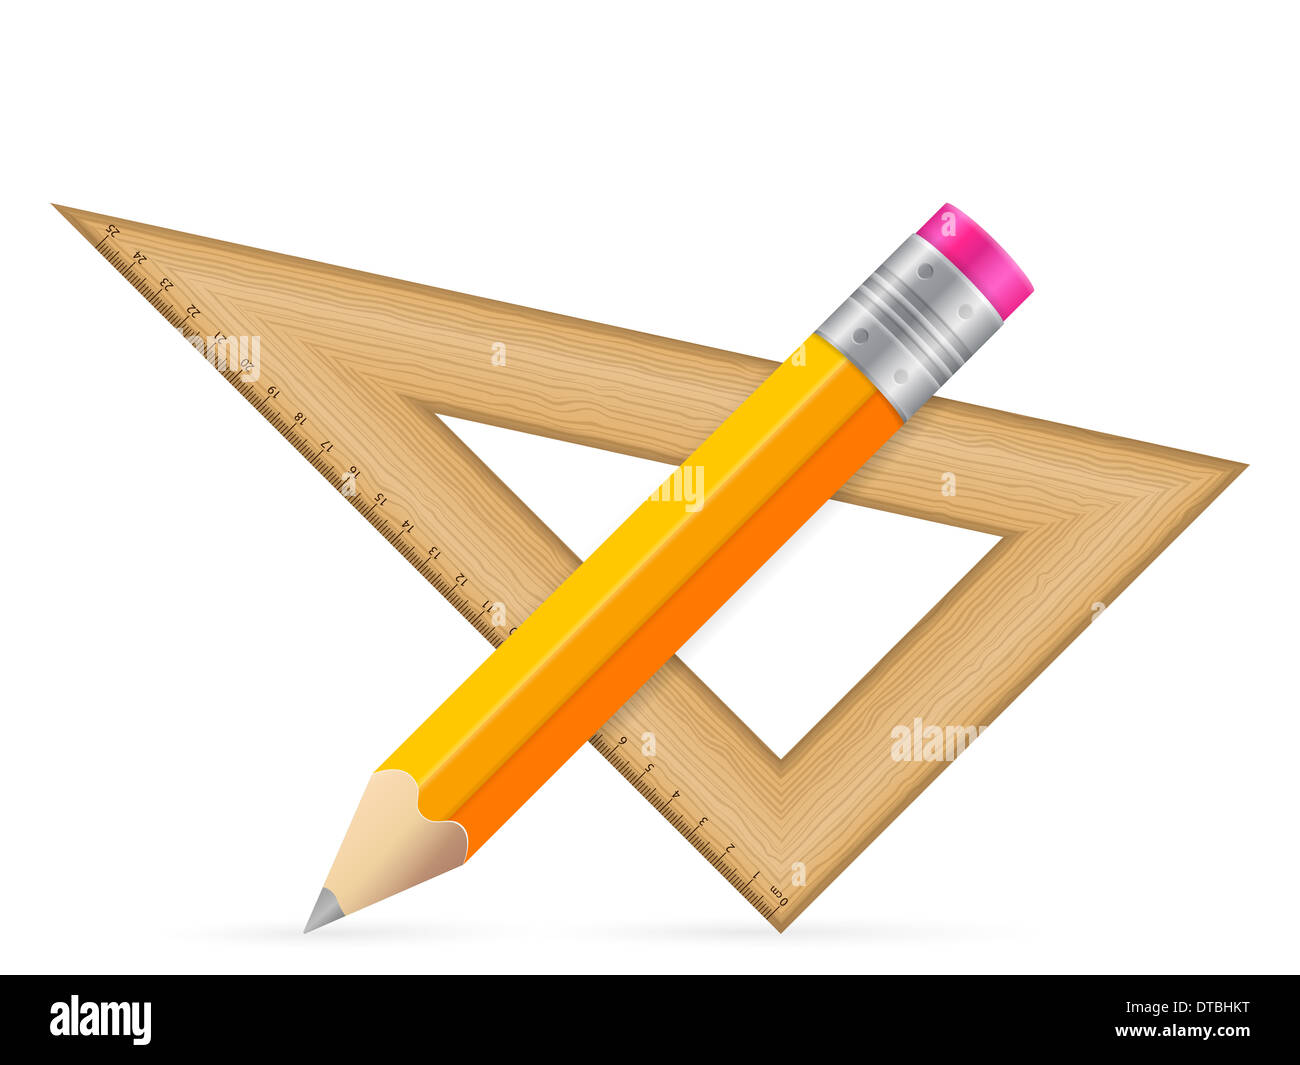 Lineal und Bleistift Dreieck auf weißem Grund Stockfotografie - Alamy